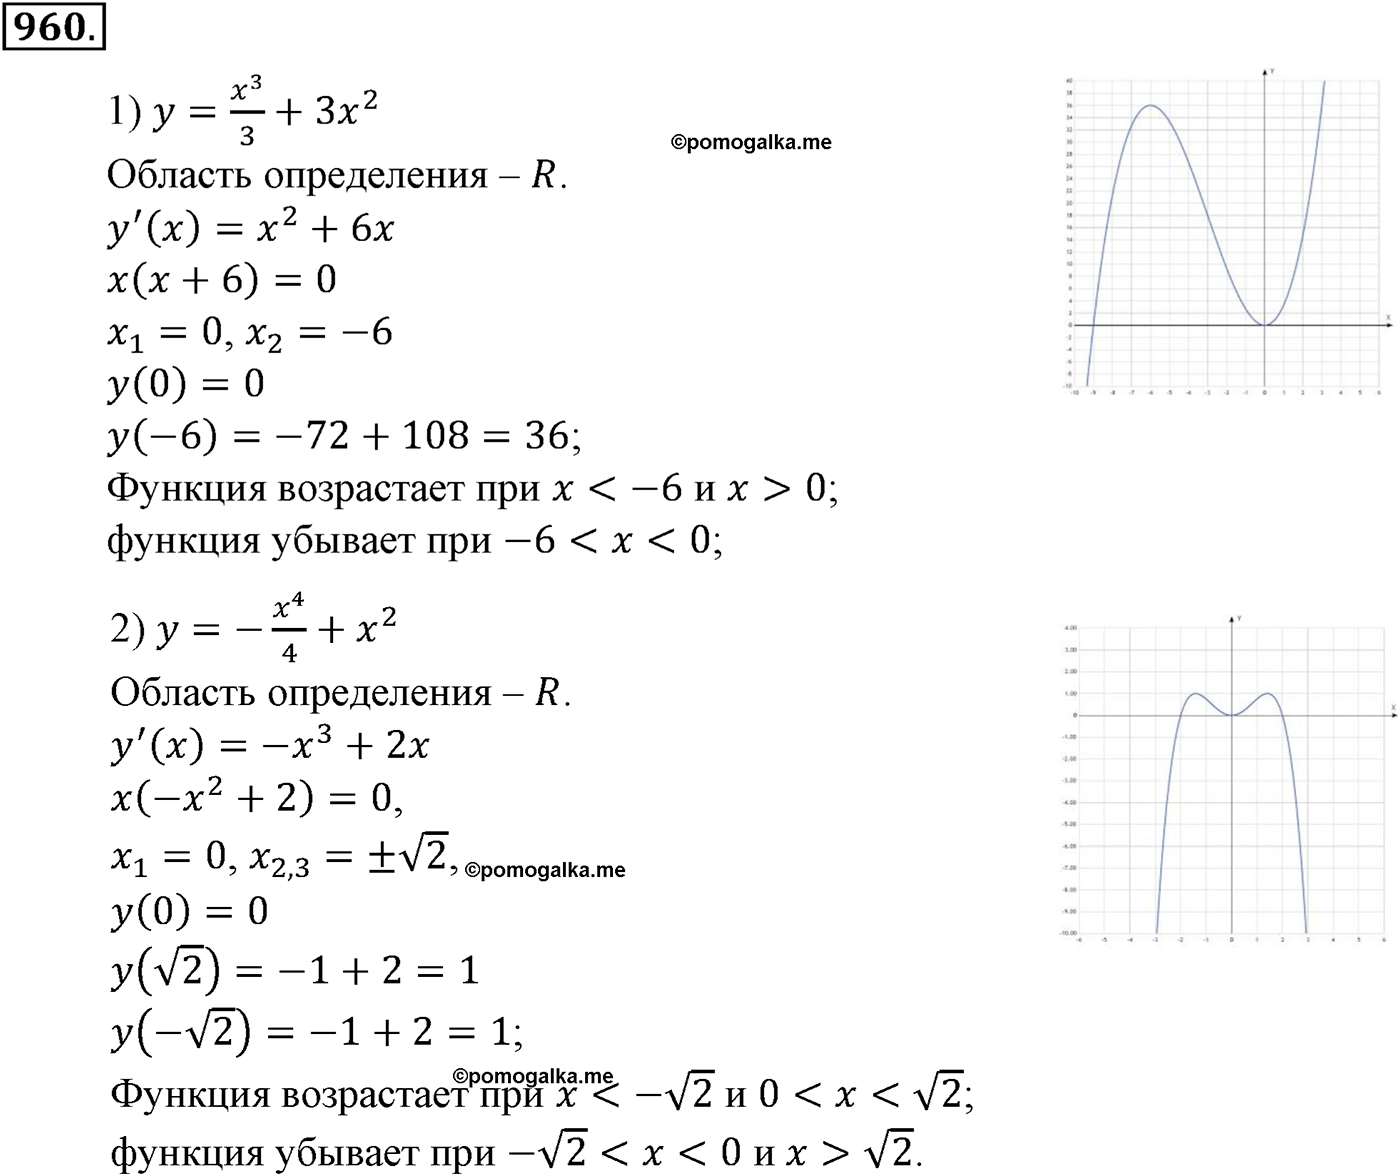 разбор задачи №960 по алгебре за 10-11 класс из учебника Алимова, Колягина